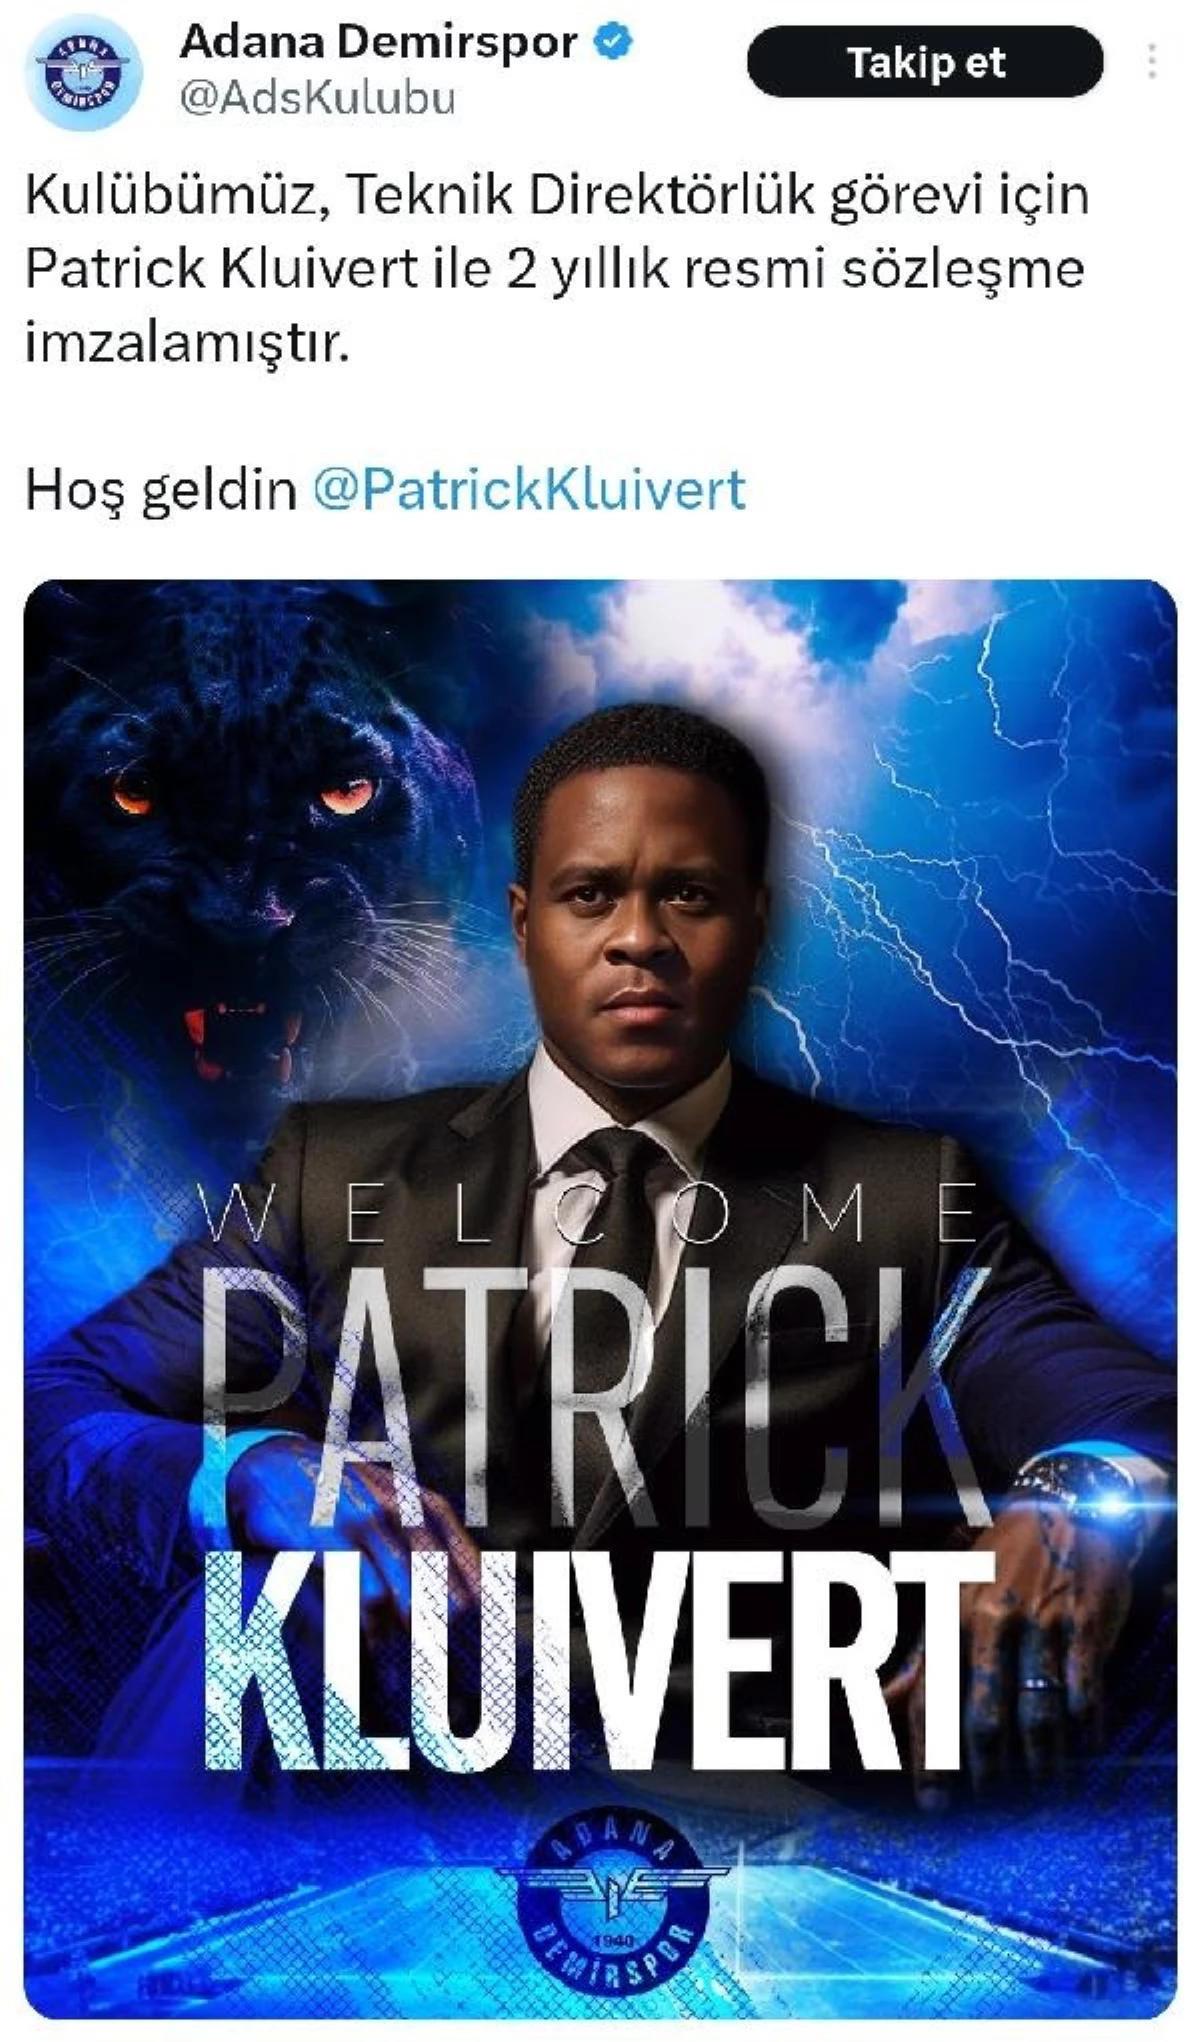 Adana Demirspor, Patrick Kluivert ile 2 yıllık mukavele imzaladı